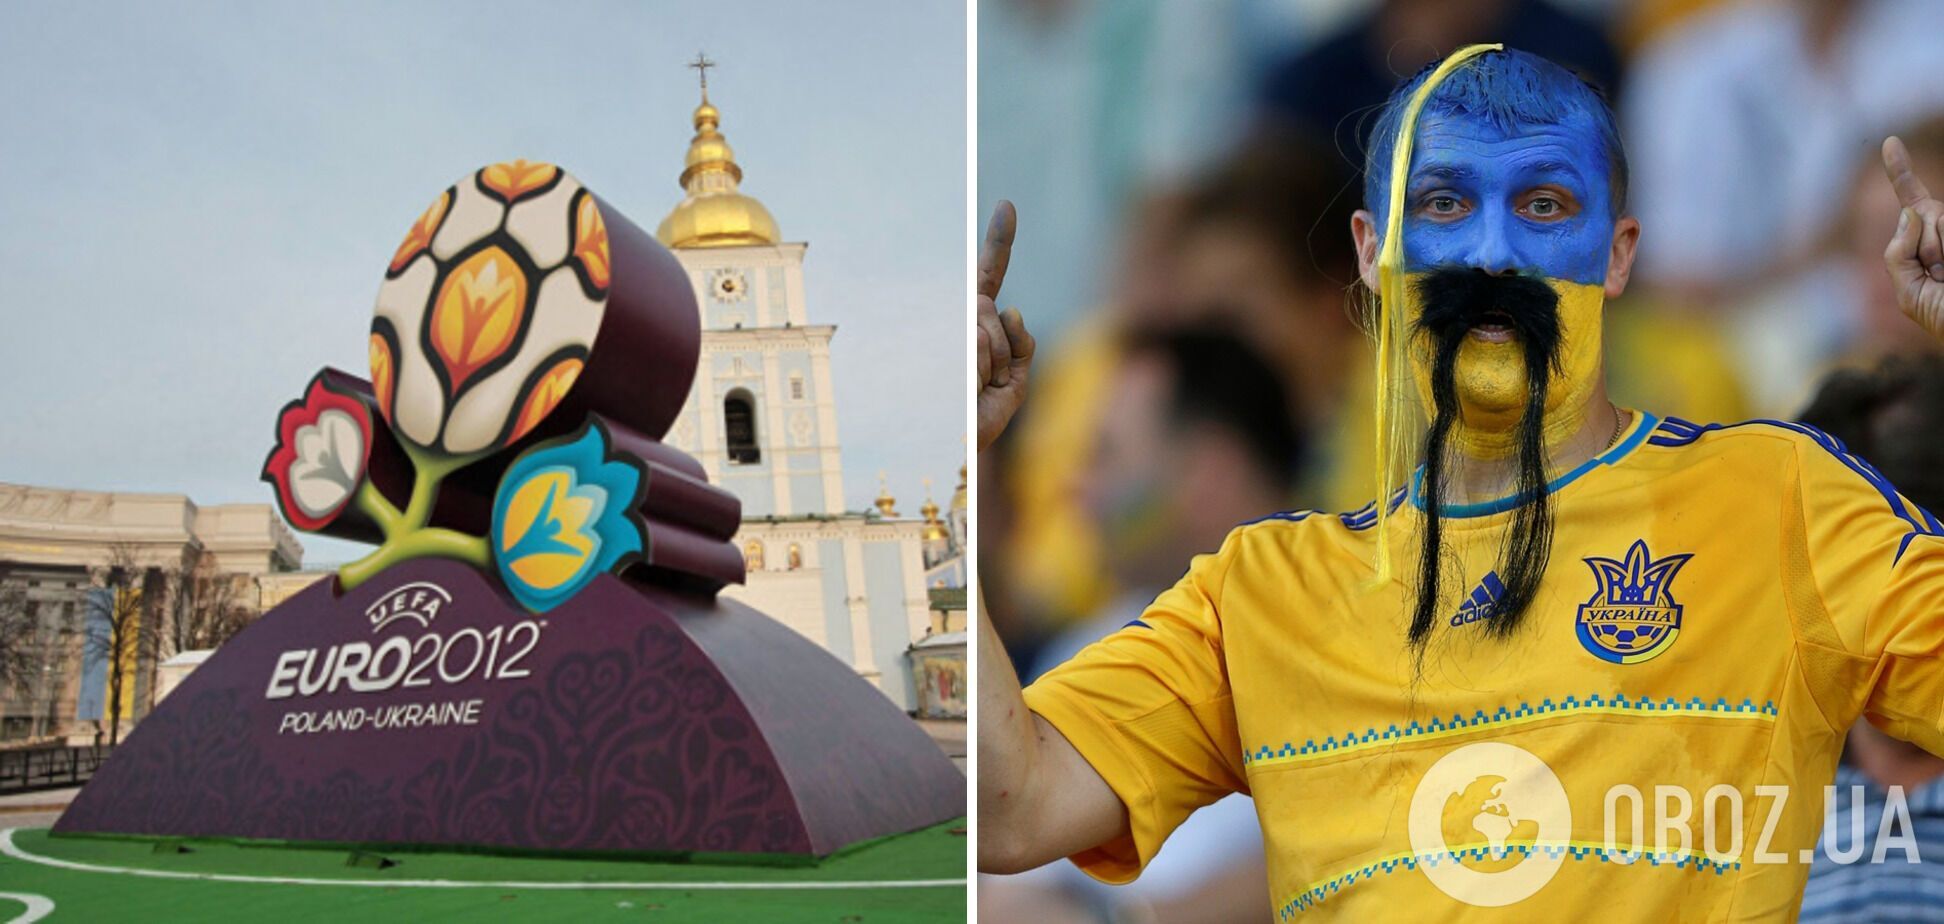 В 2012 году Украина приняла Евро-2012